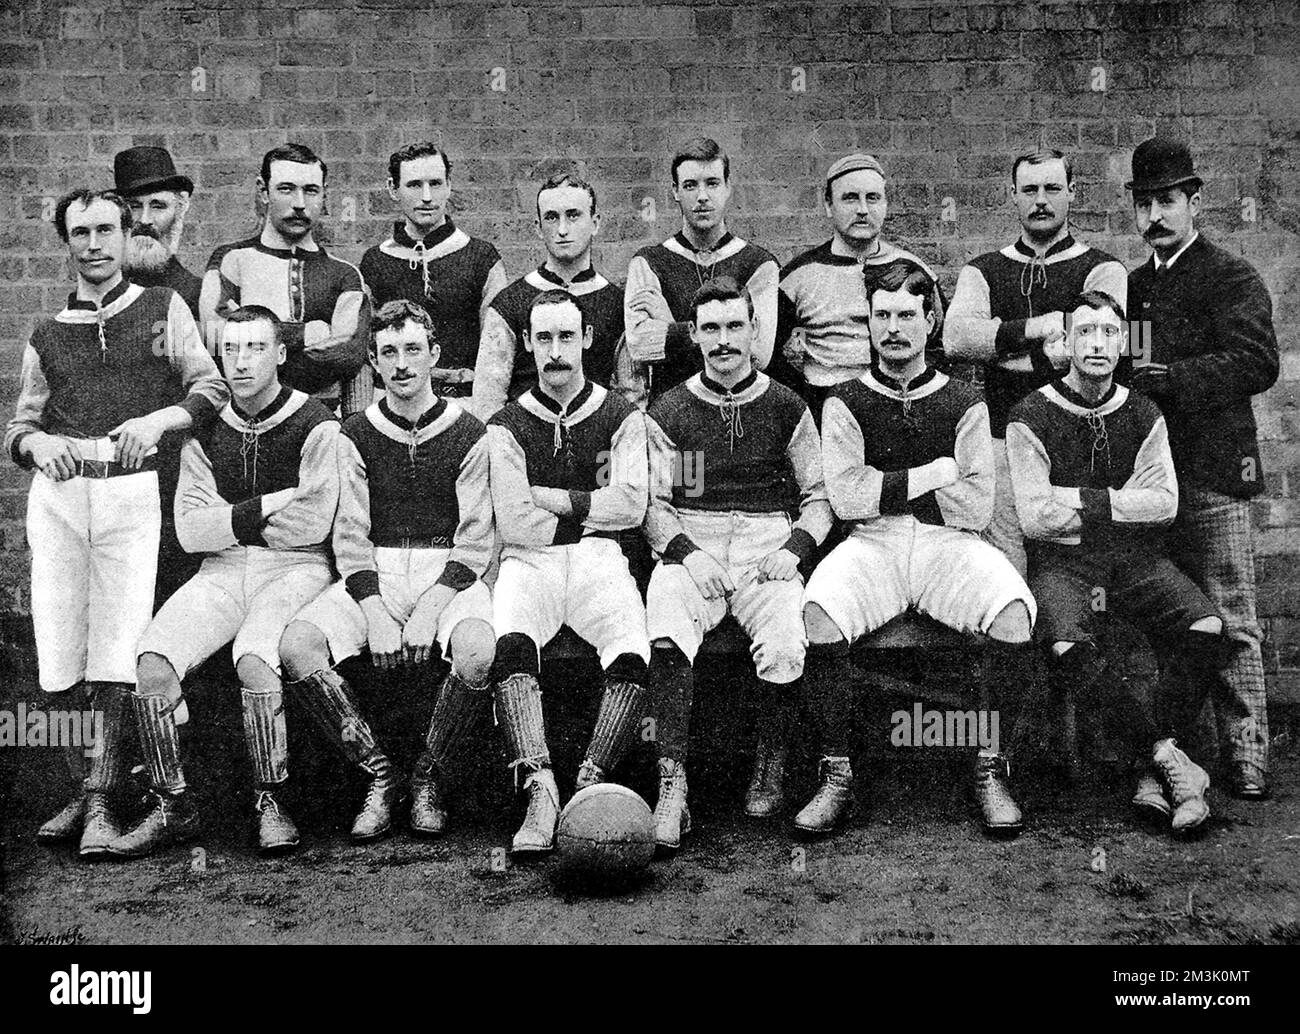 Aston Villa Football Club in der Saison 1891-1892. Das Bild zeigt: Hintere Reihe, von links nach rechts: G. Campbell (links halb hinten), ein unbekannter bärtiger Mann, W. Dickson (Mitte vorn), A. Hinchley (Torhüter), J. Baird (links hinten), C. Hare (innen oder außen rechts), R. Oxenbould (Trainer), W. Evans (rechts hinten rechts), G.B. Ramsey (Sekretärin). Erste Reihe, von links nach rechts: Jas. Cowan (Mitte, halb hinten), W.C. Athersmith (außen rechts vorn), J. Brown (rechts halb hinten), J. Devey (Mitte vorn), D. Hodgetts (innen oder außen rechts), L. Campbell (außen links vorn). 1891 Stockfoto